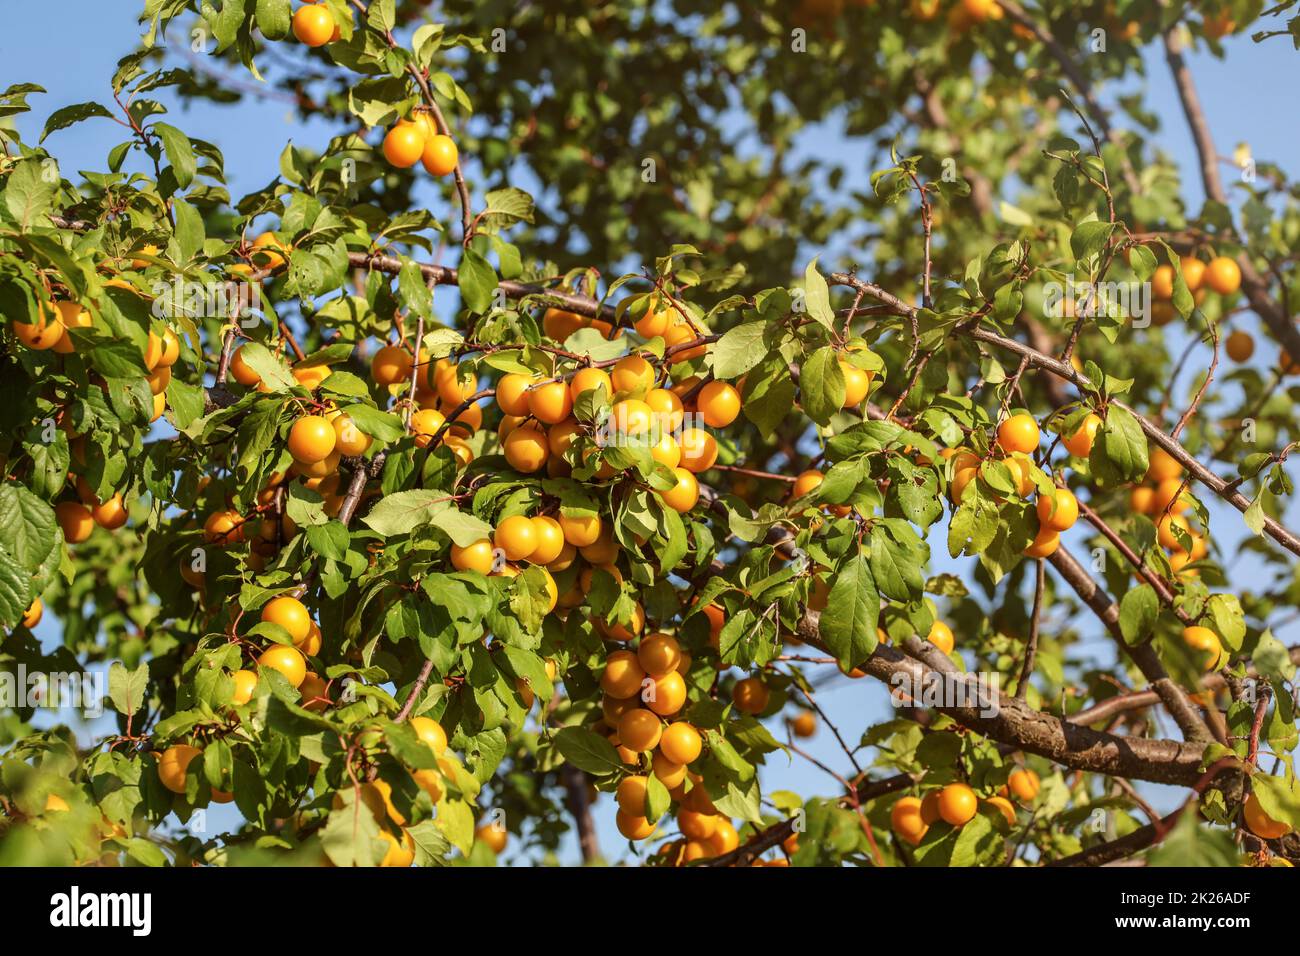 Reife, gelbe mirabelle Pflaume (Prunus domestica) Früchte am Baum, am Nachmittag Sonne beleuchtet. Stockfoto